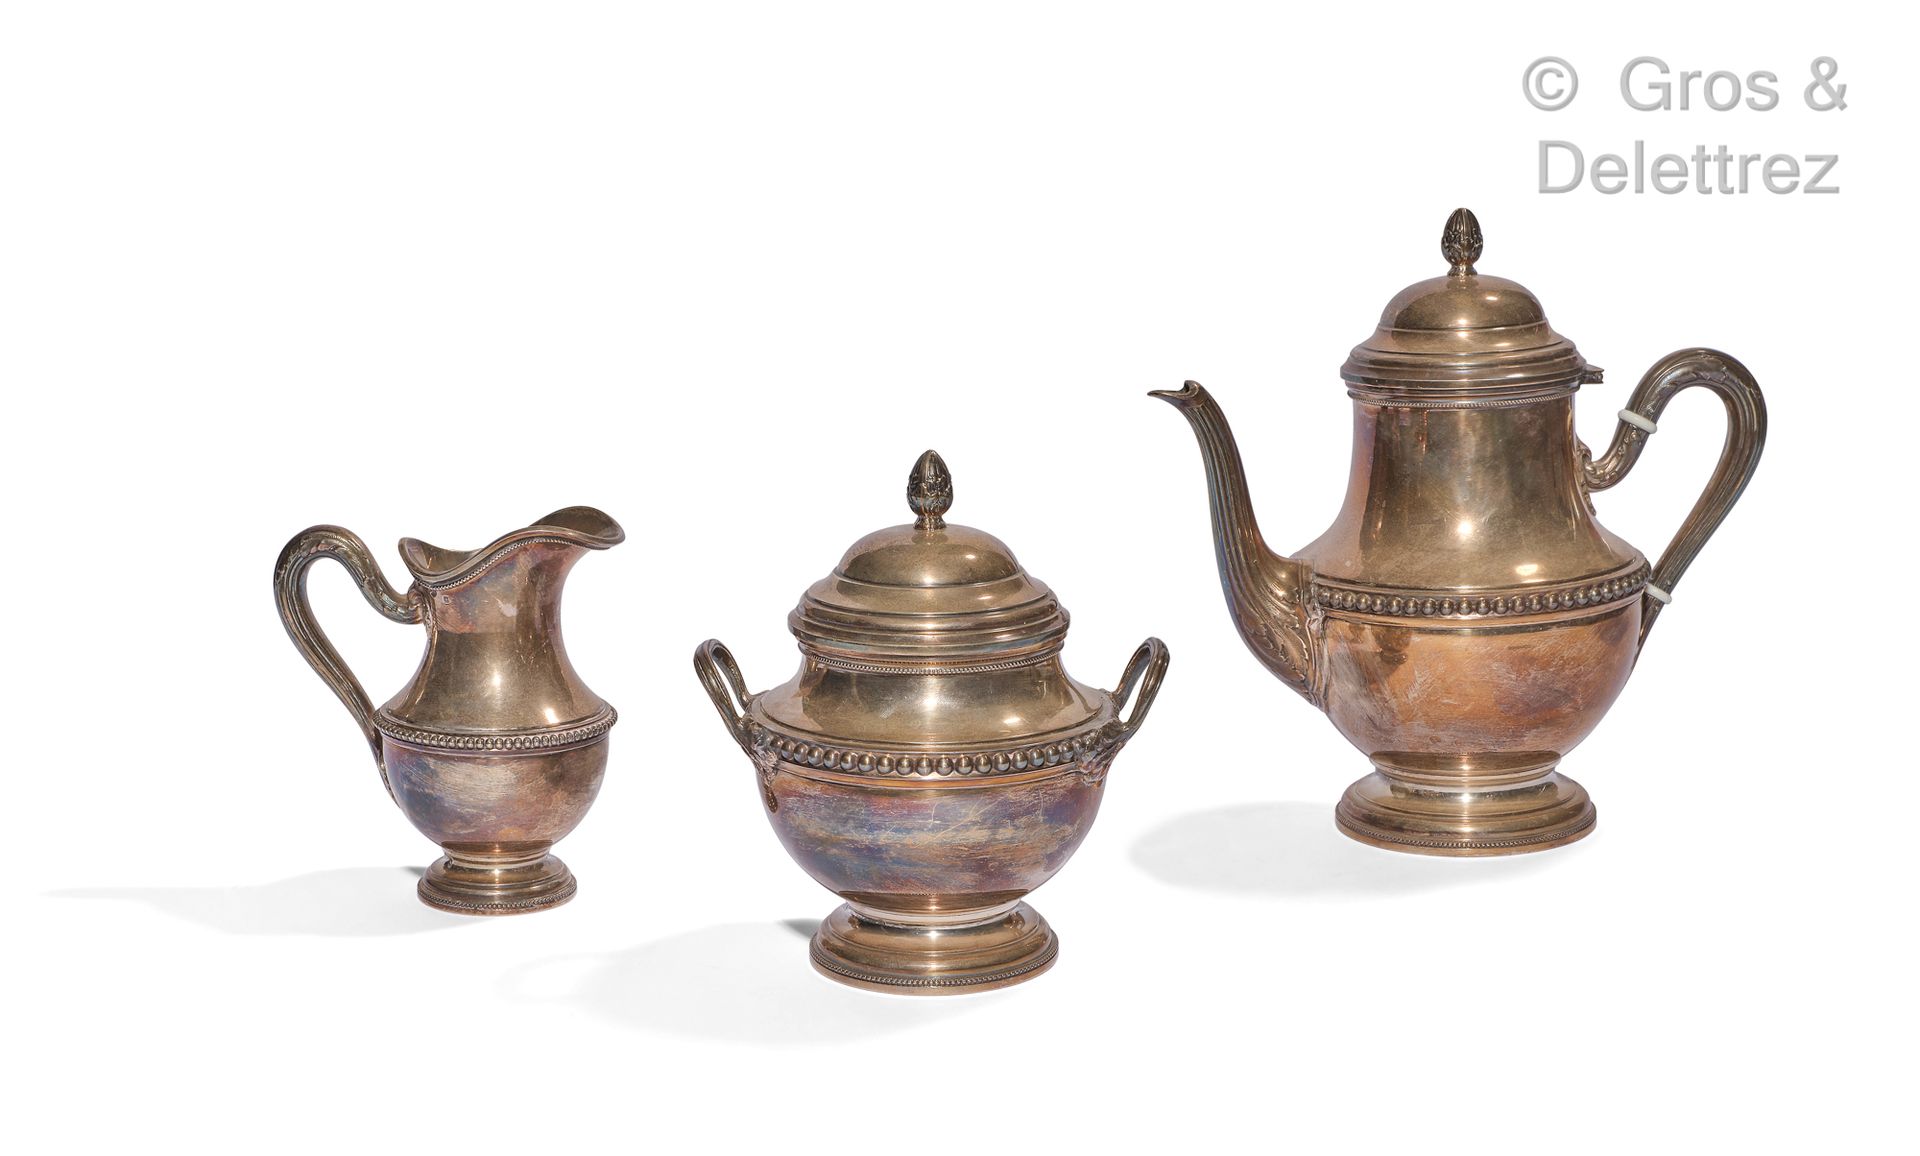 Null 有珍珠装饰的银质茶具，手柄上有双叶的附件。手柄是一个橡子的形状。它由一个茶壶、一个牛奶壶和一个有盖糖碗组成。

密涅瓦印记 - 金匠 : Hénin &hellip;